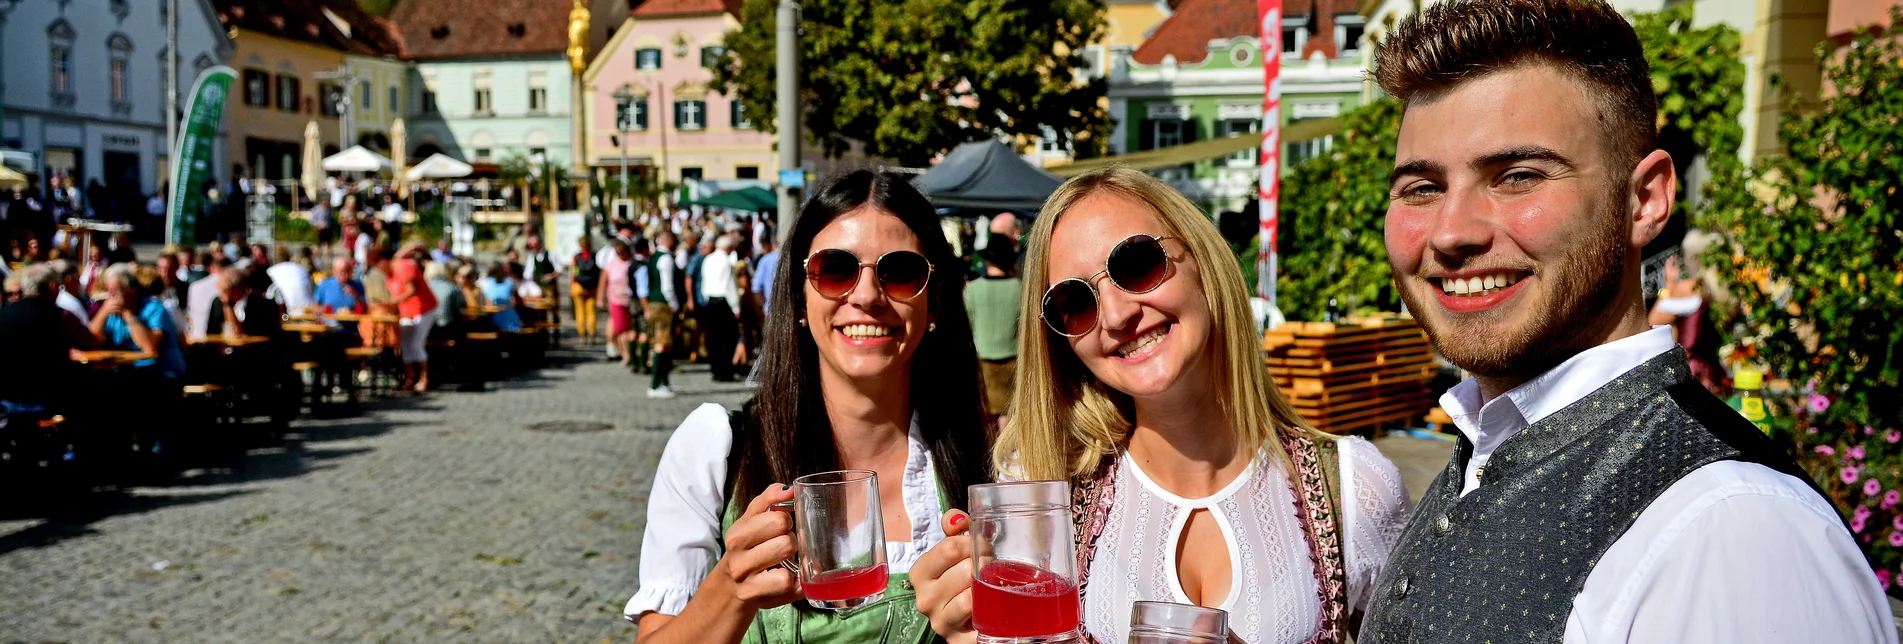 Harvest festival and wine festival on the main square in Hartberg | © Oststeiermark Tourismus | Christian Strassegger